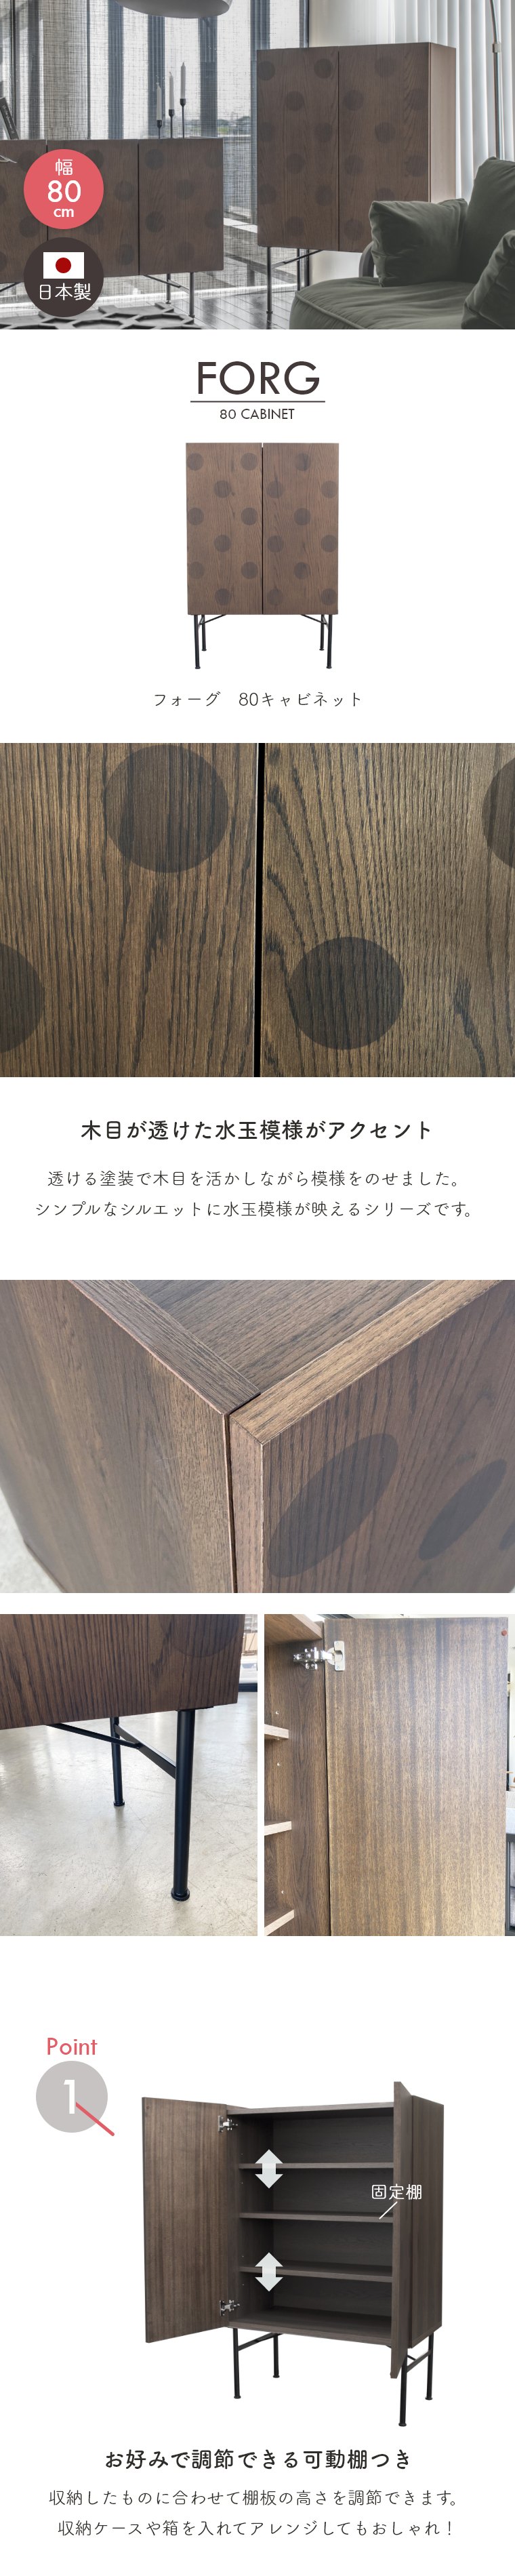 キャビネット FORG フォーグ ガルト 日本製 国産 木製 シンプル かわいい 大容量